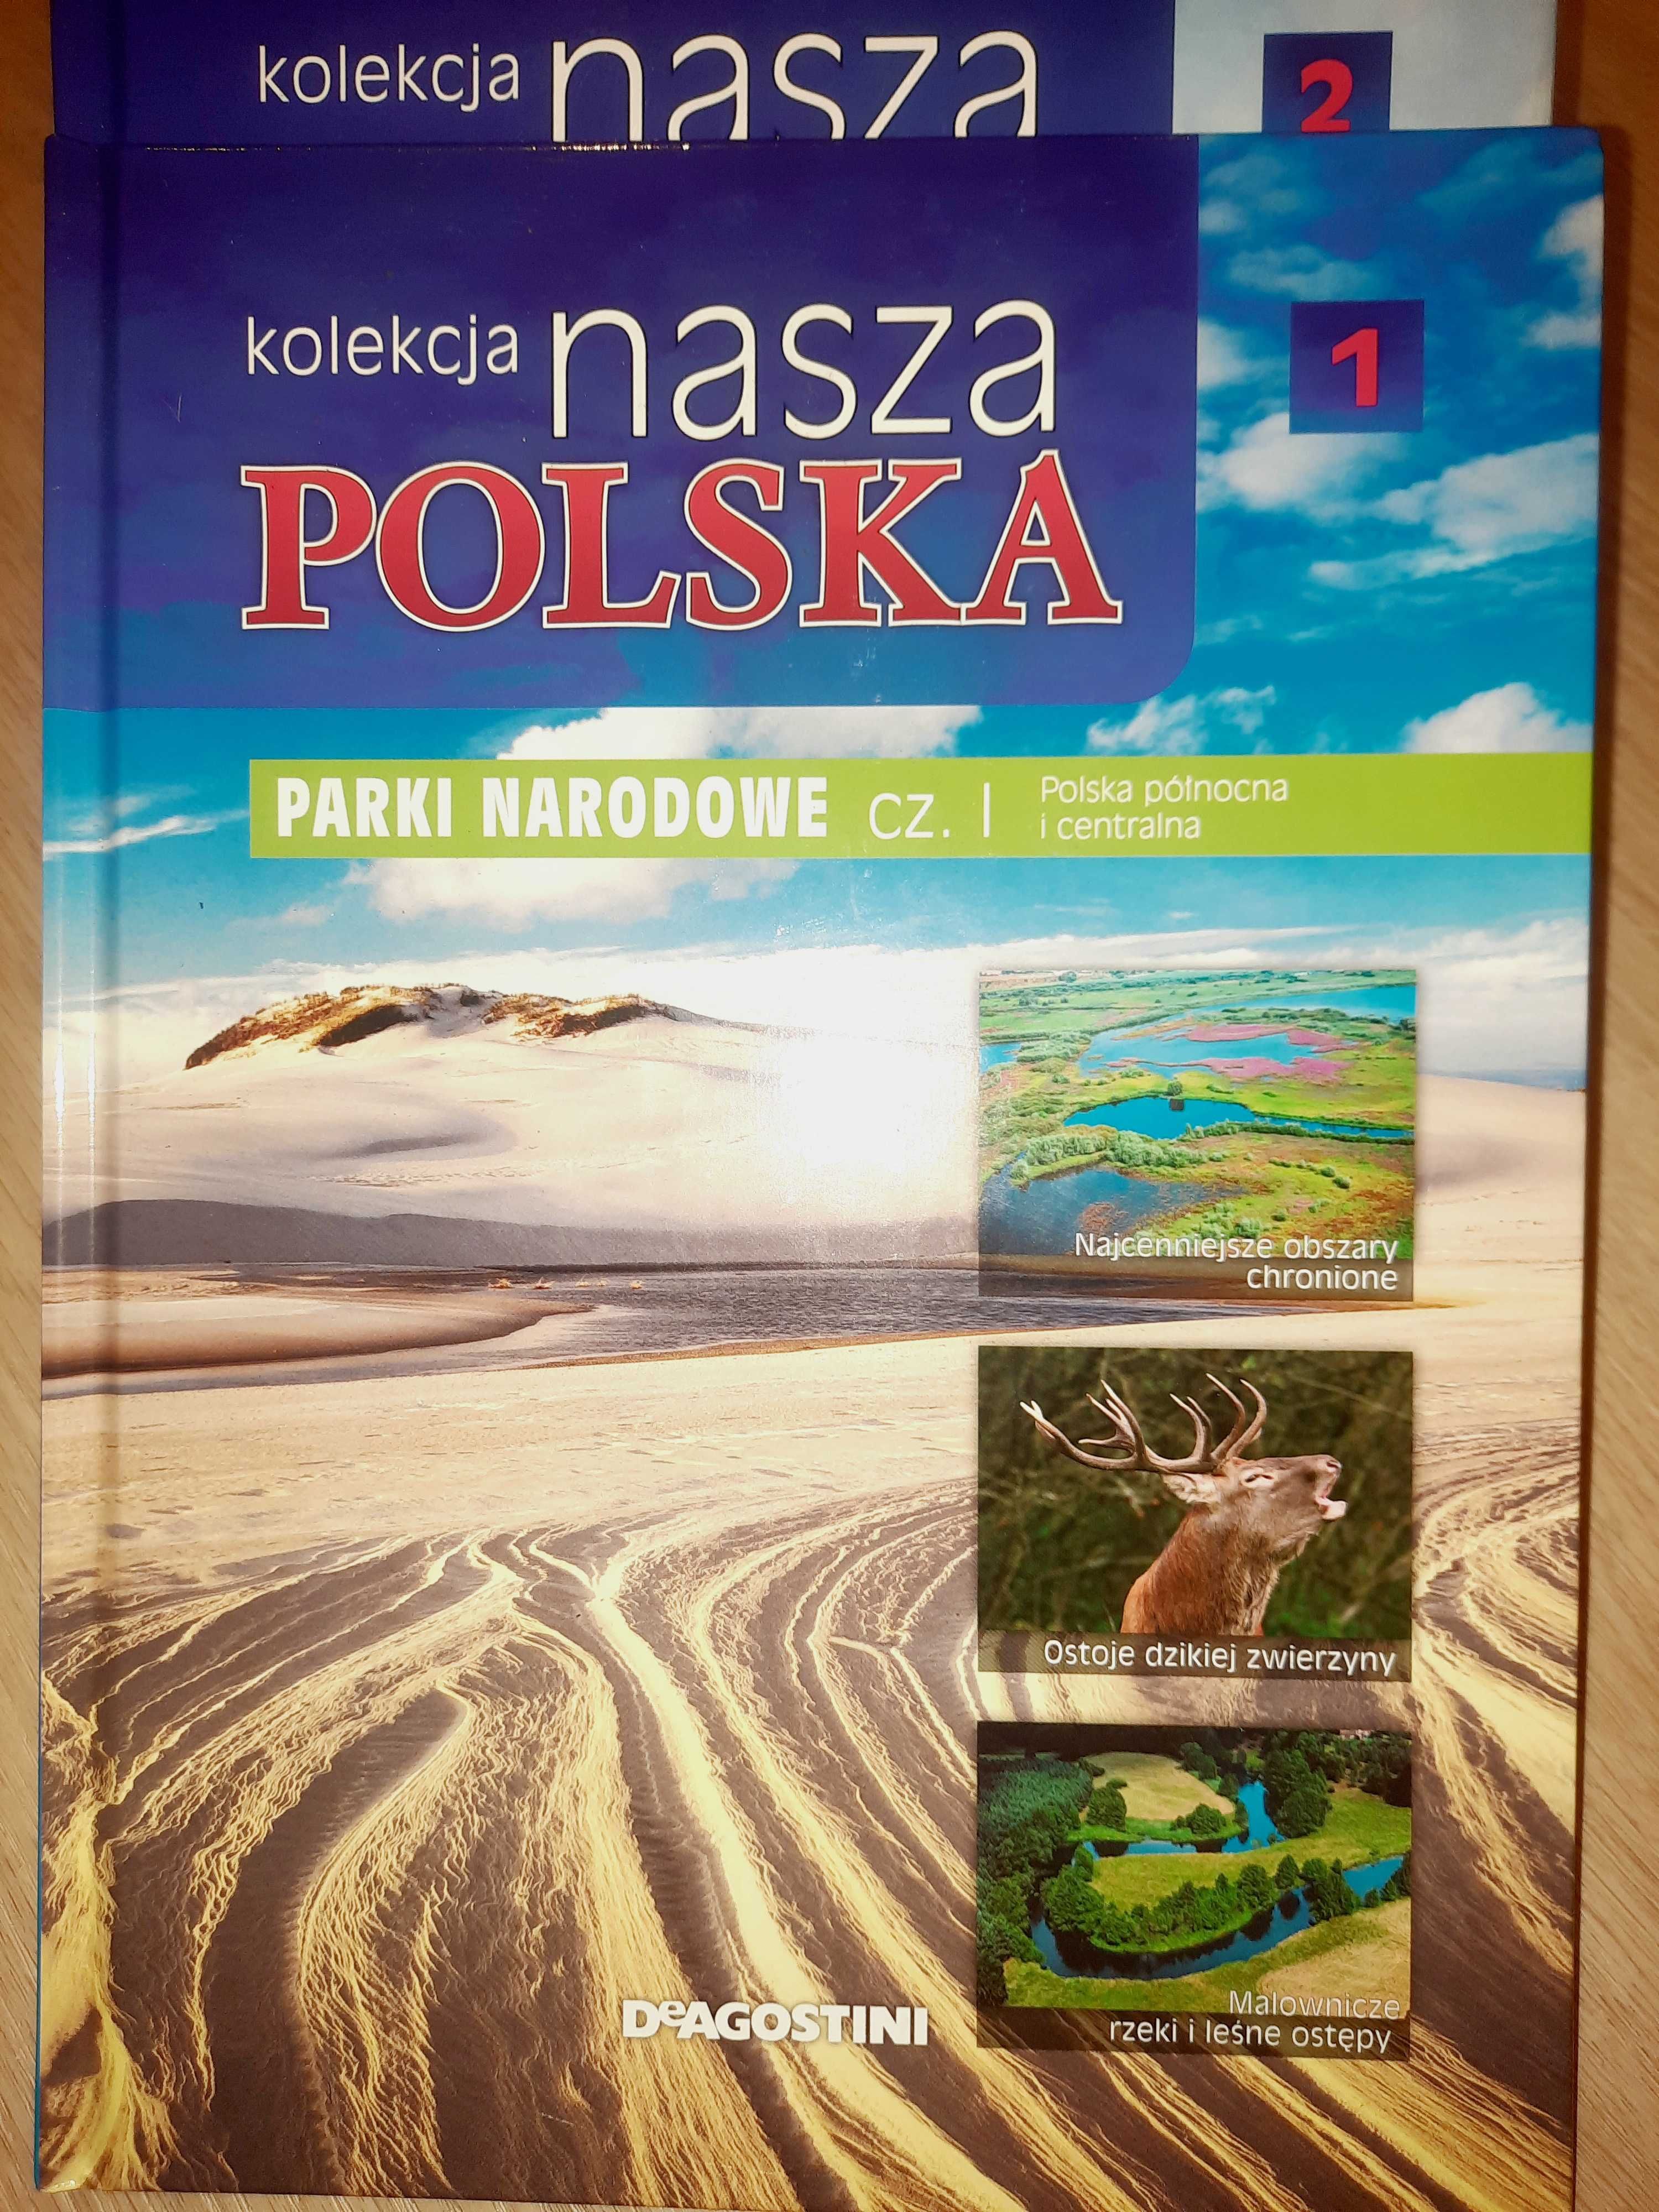 Kolekcja Nasza Polska Deagostini albumy 1-25